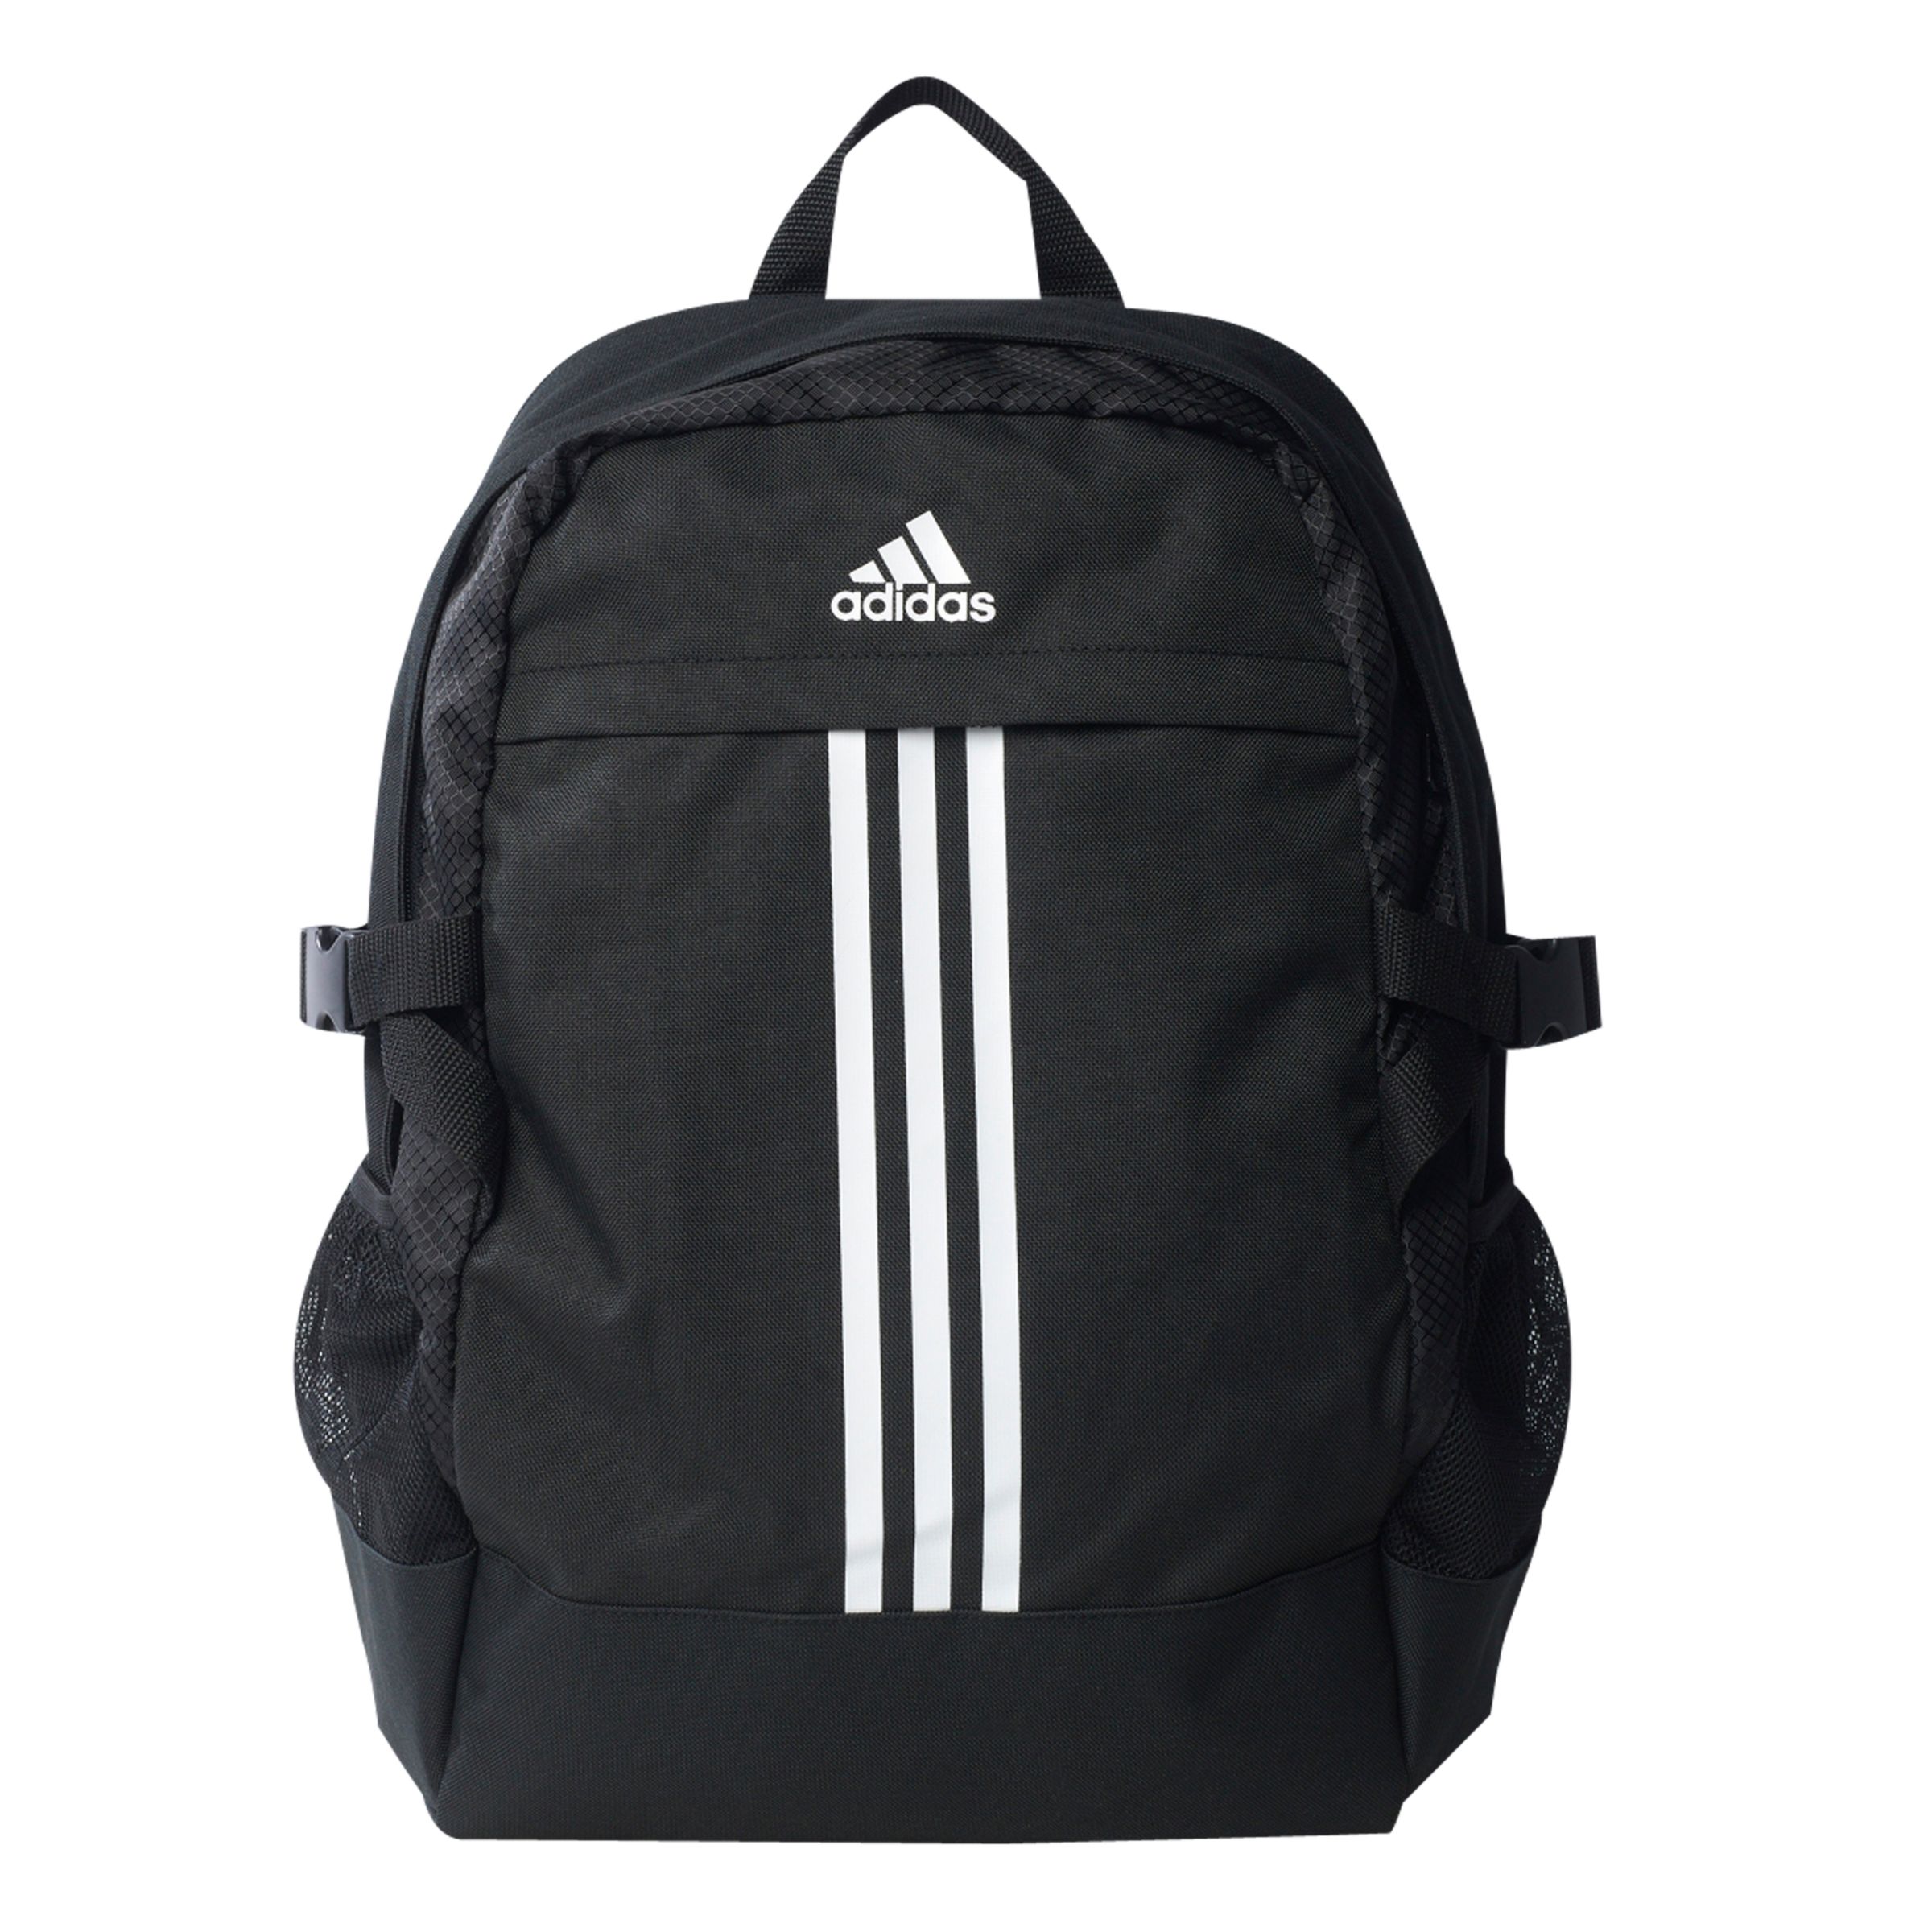 Adidas Power 3 Backpack, Black at John 